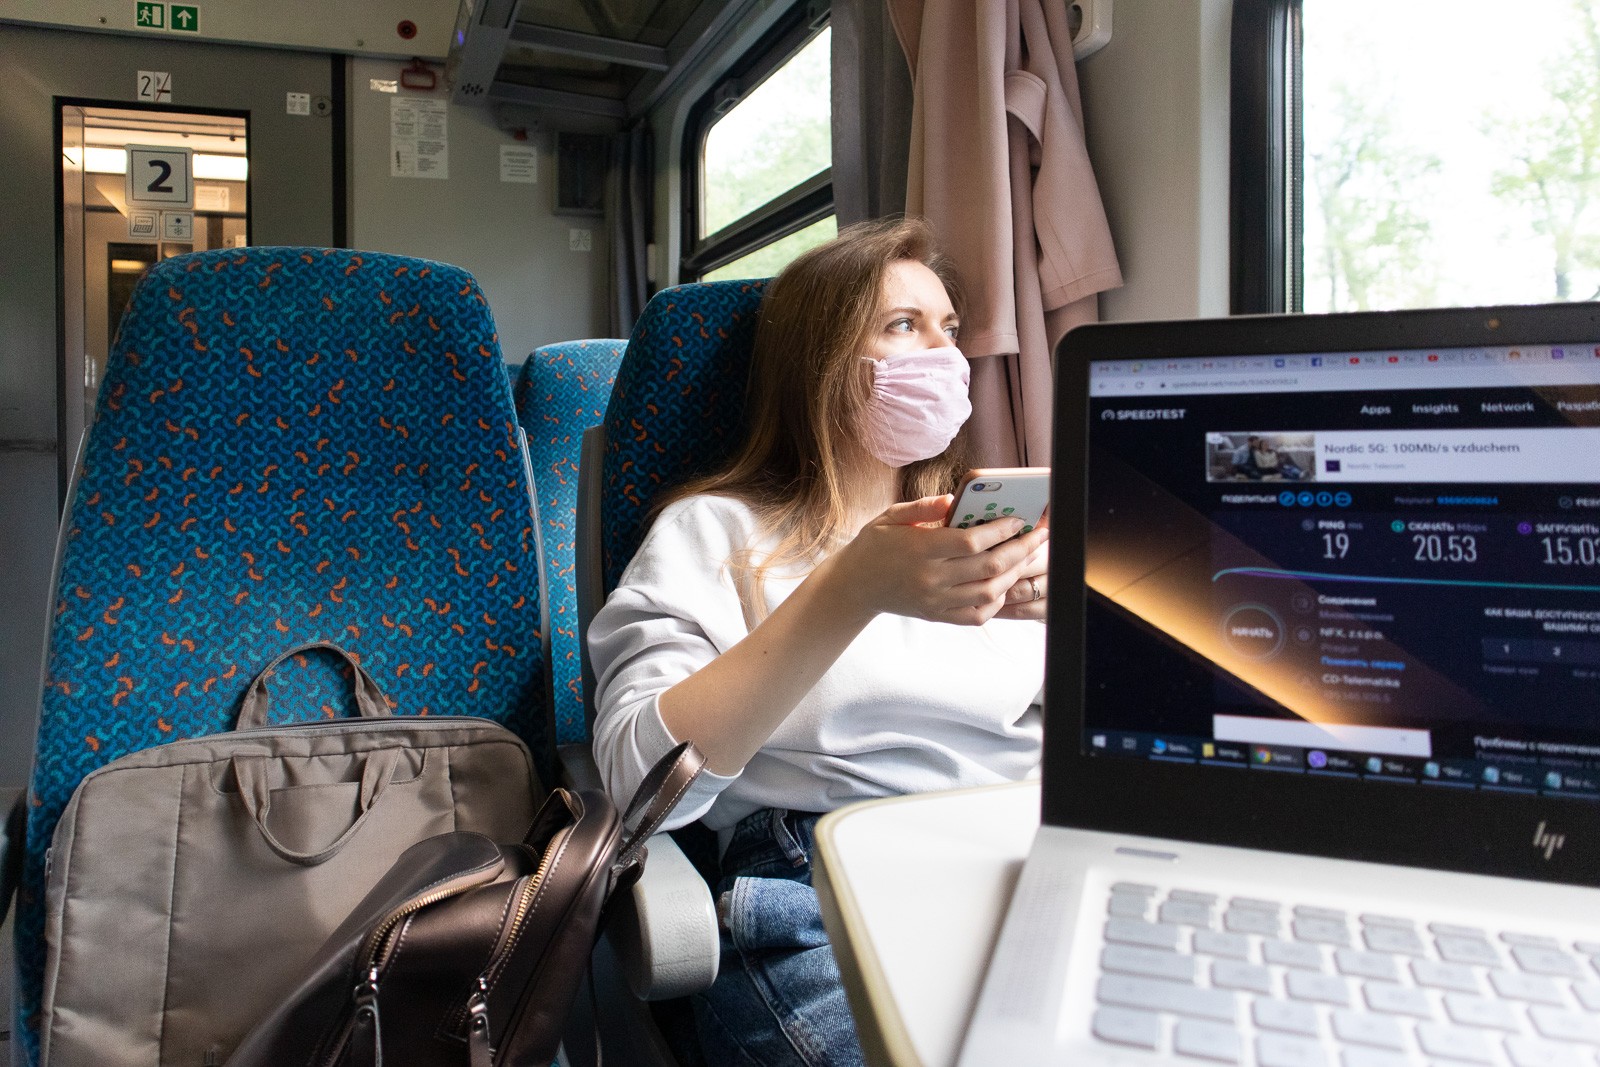 Бесплатный интернет в казахстанских поездах станет доступен пассажирам